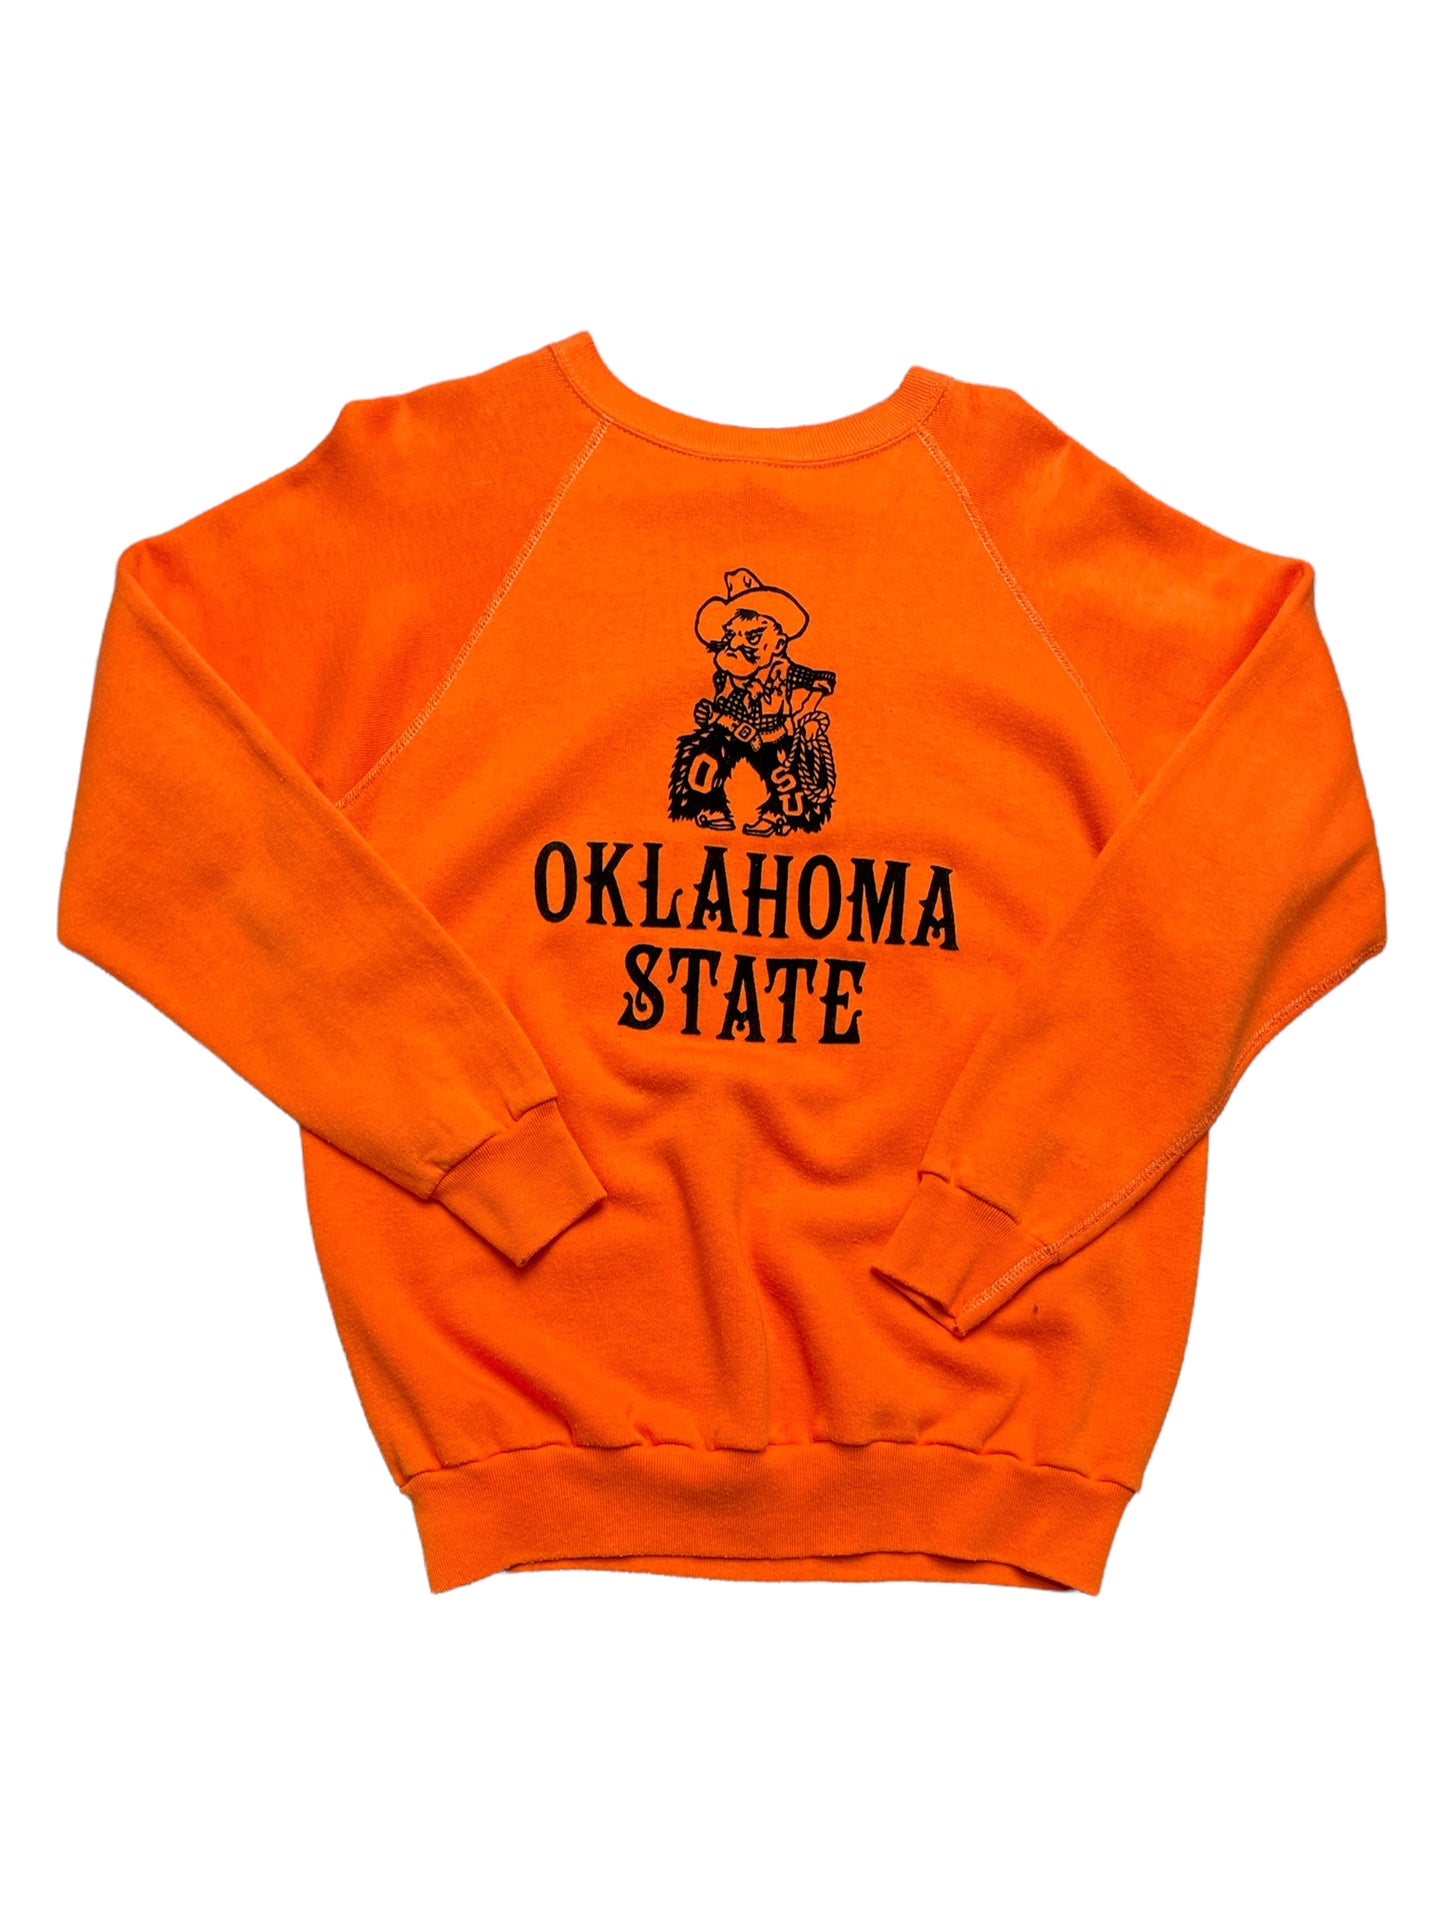 Vintage 70s Orange Oklahoma State Sweatshirt XLarge